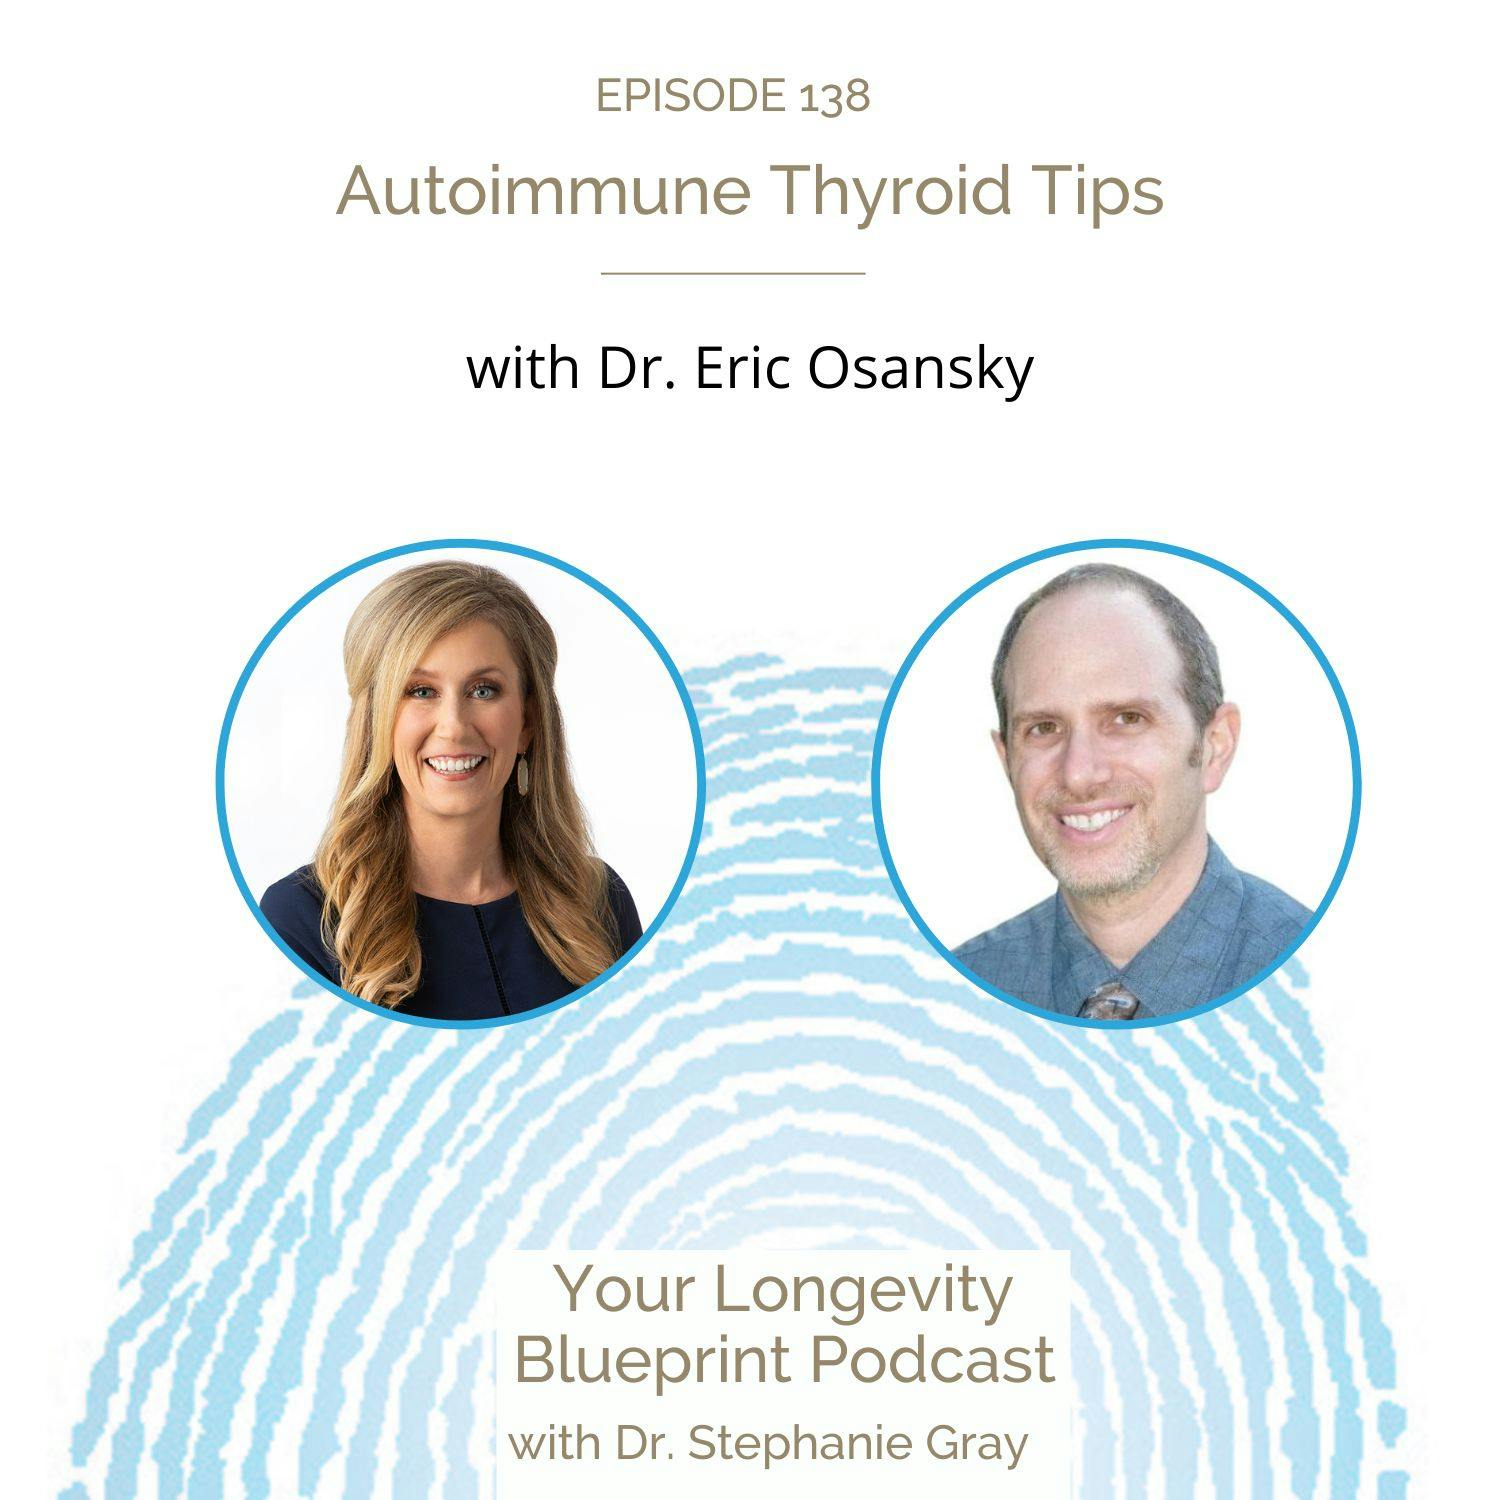 Autoimmune Thyroid Tips with Dr. Eric Osansky